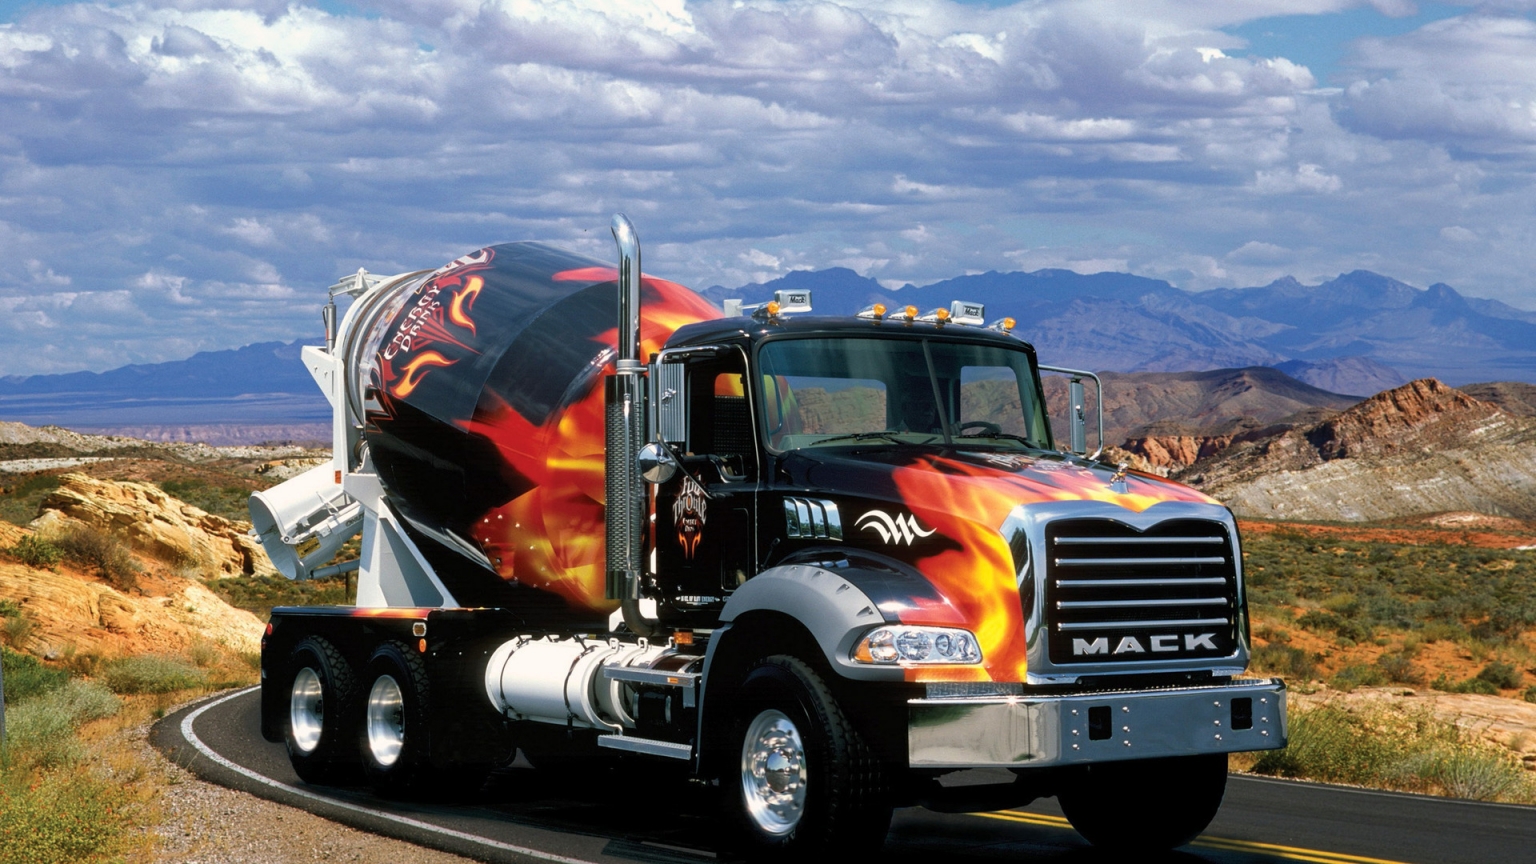 MACK Truck for 1536 x 864 HDTV resolution